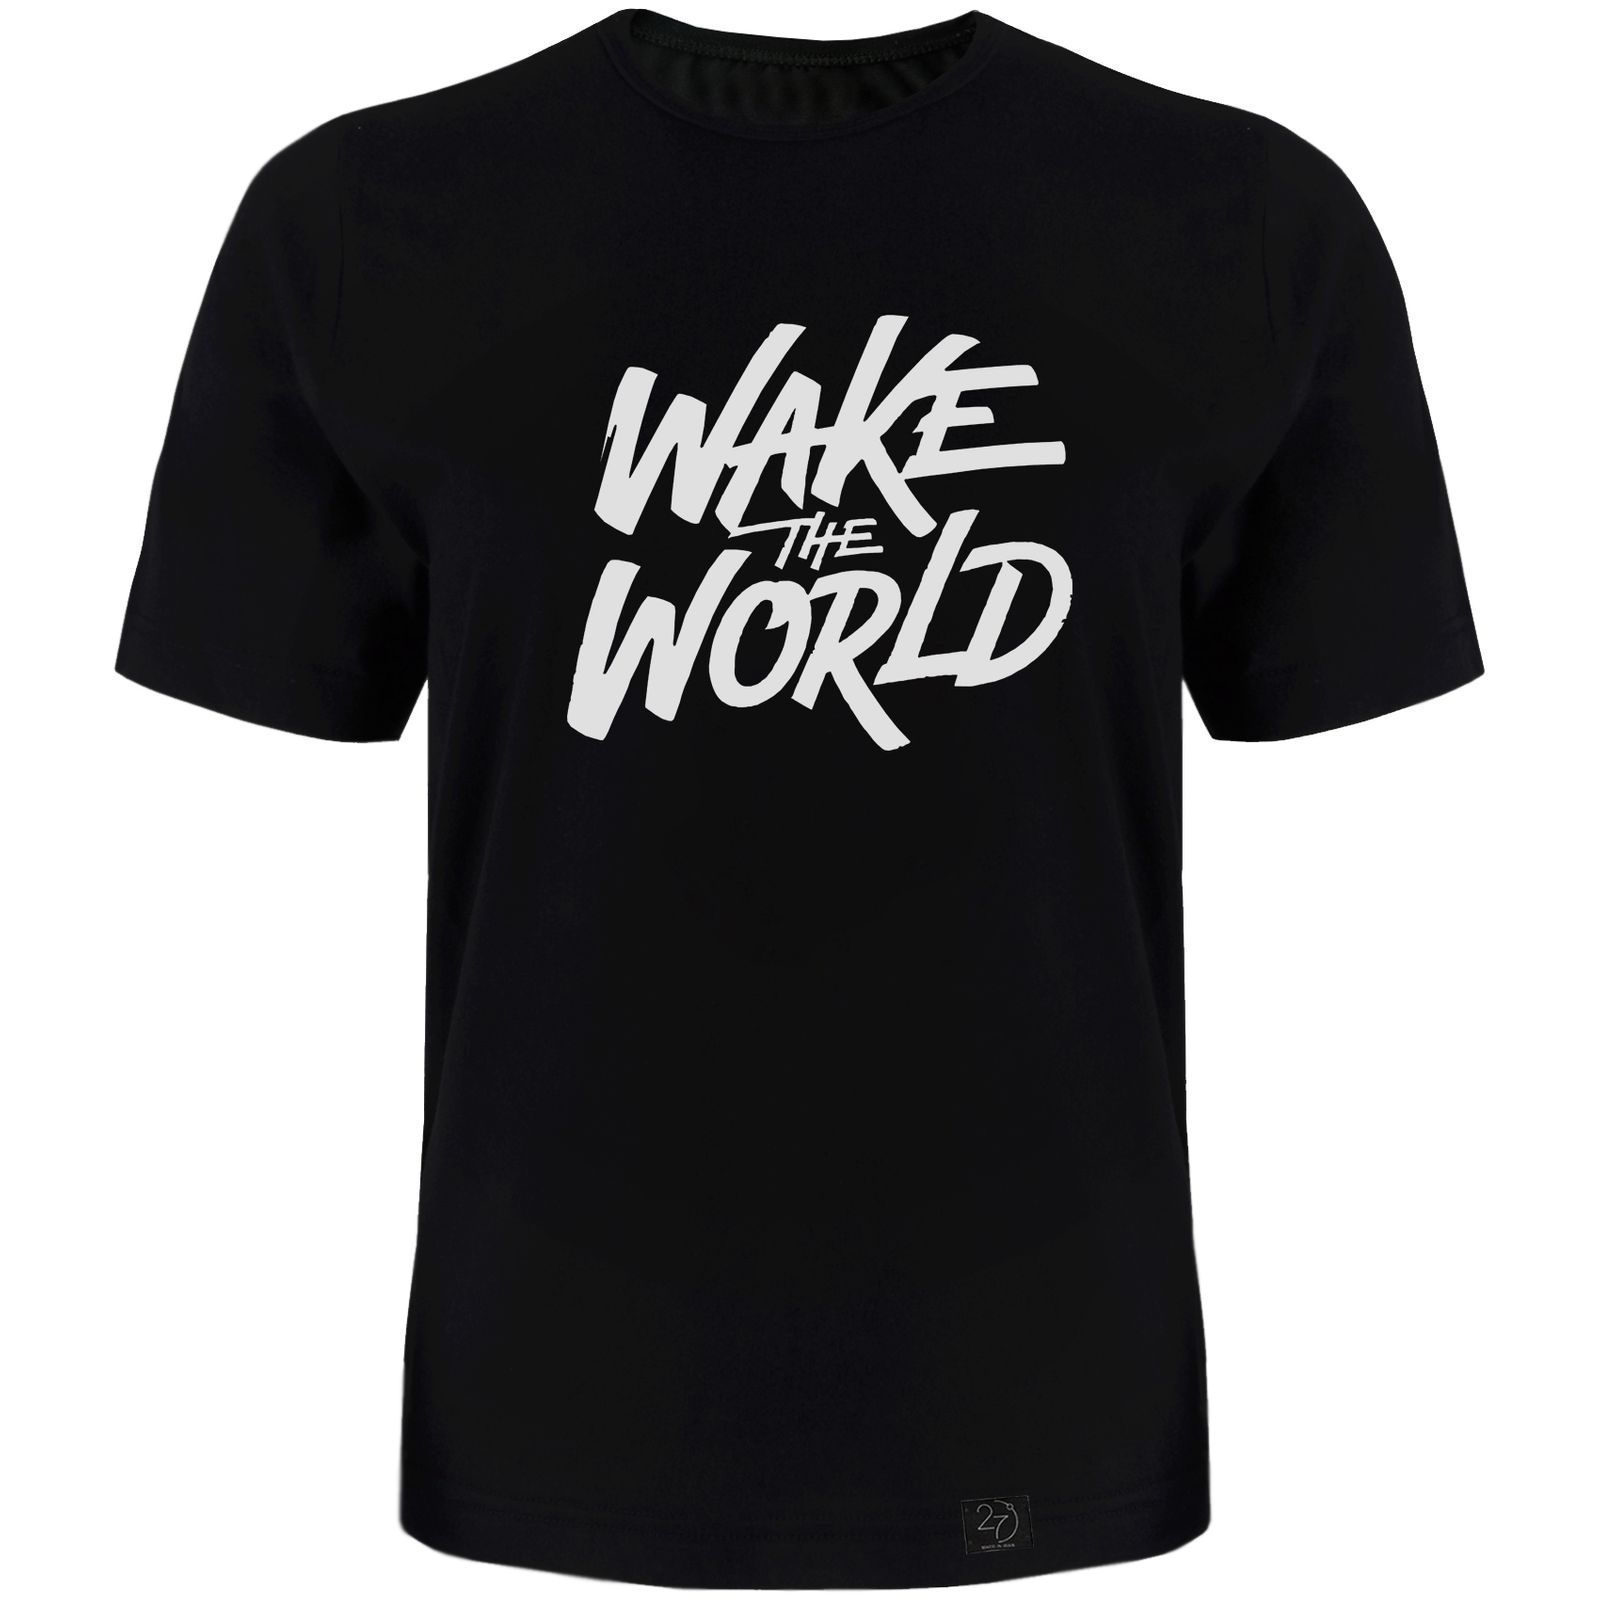 تی شرت آستین کوتاه مردانه 27 طرح World کد TR02 رنگ مشکی -  - 1